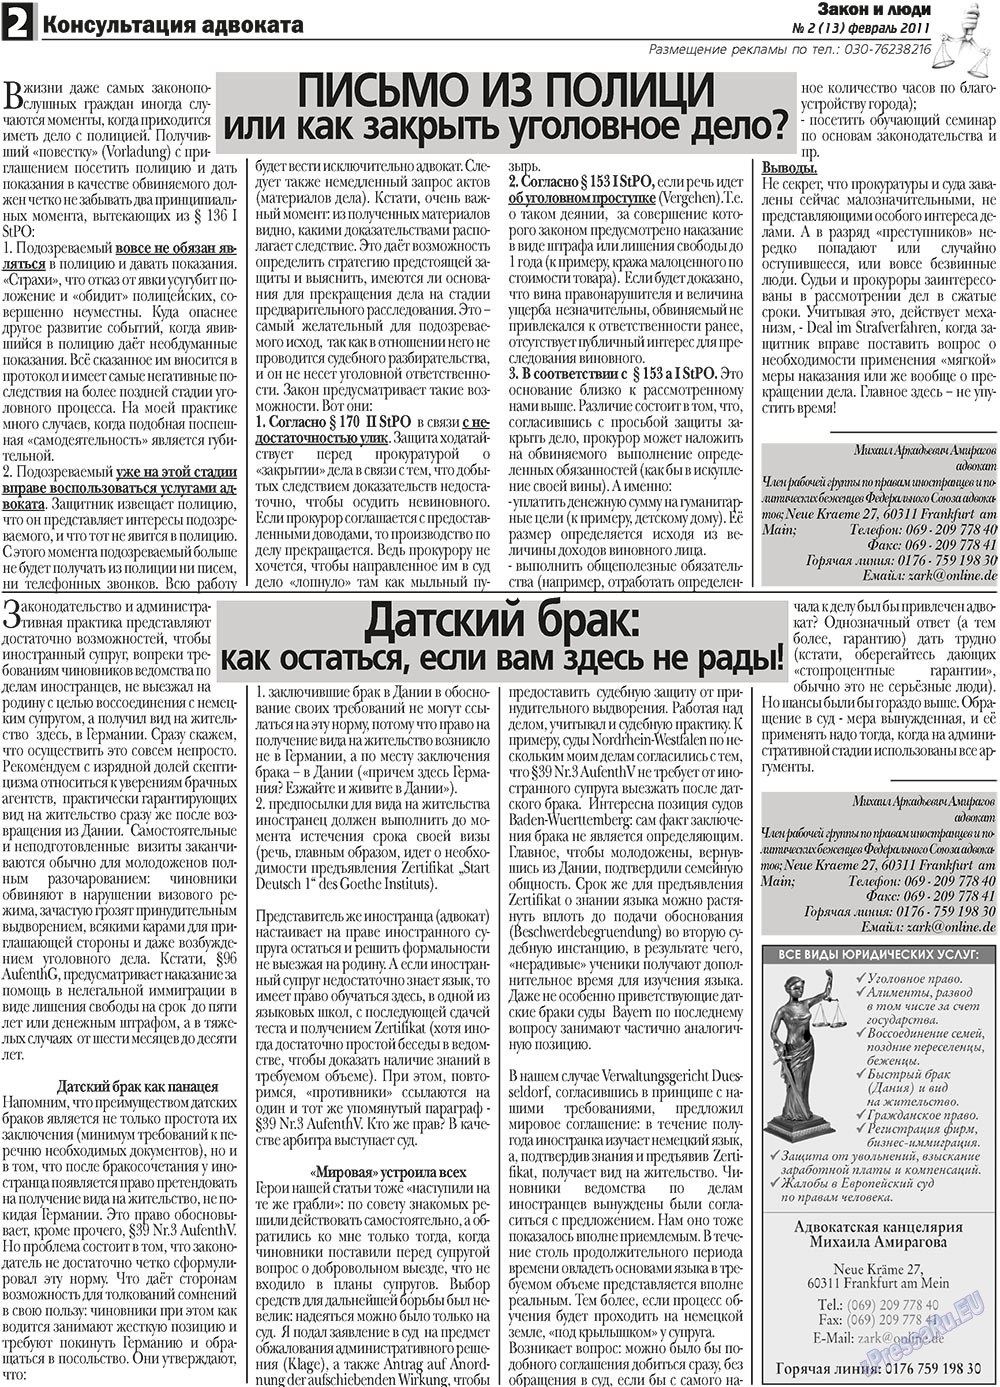 Закон и люди, газета. 2011 №2 стр.2